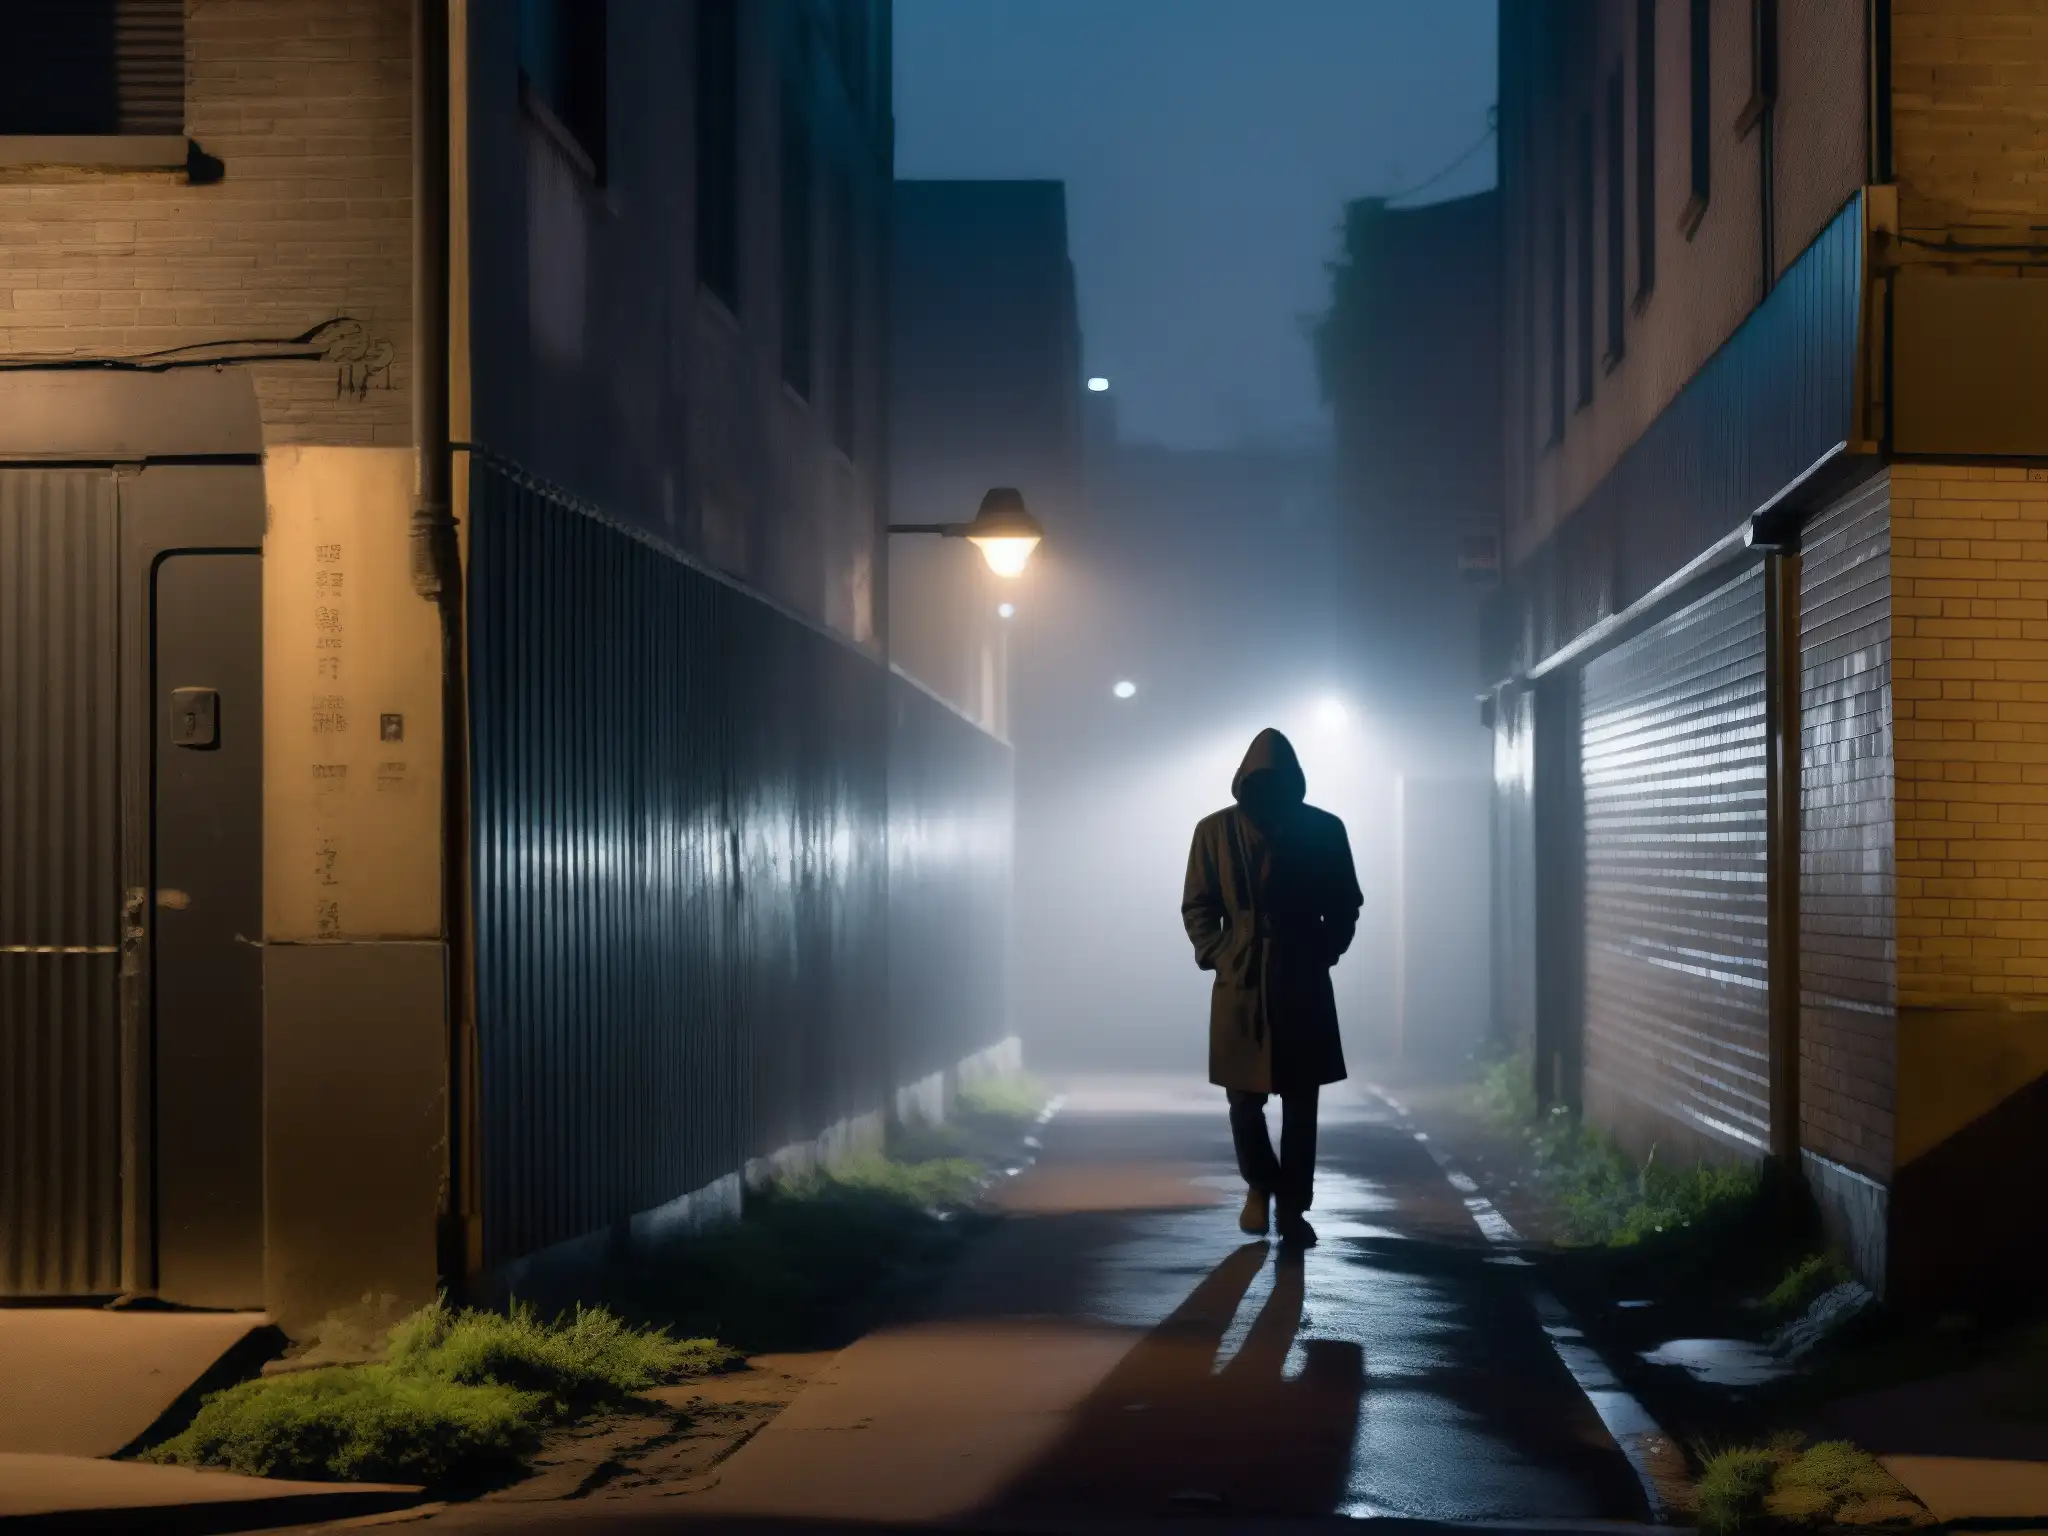 En la penumbra de un callejón, una figura solitaria bajo la luz de la calle